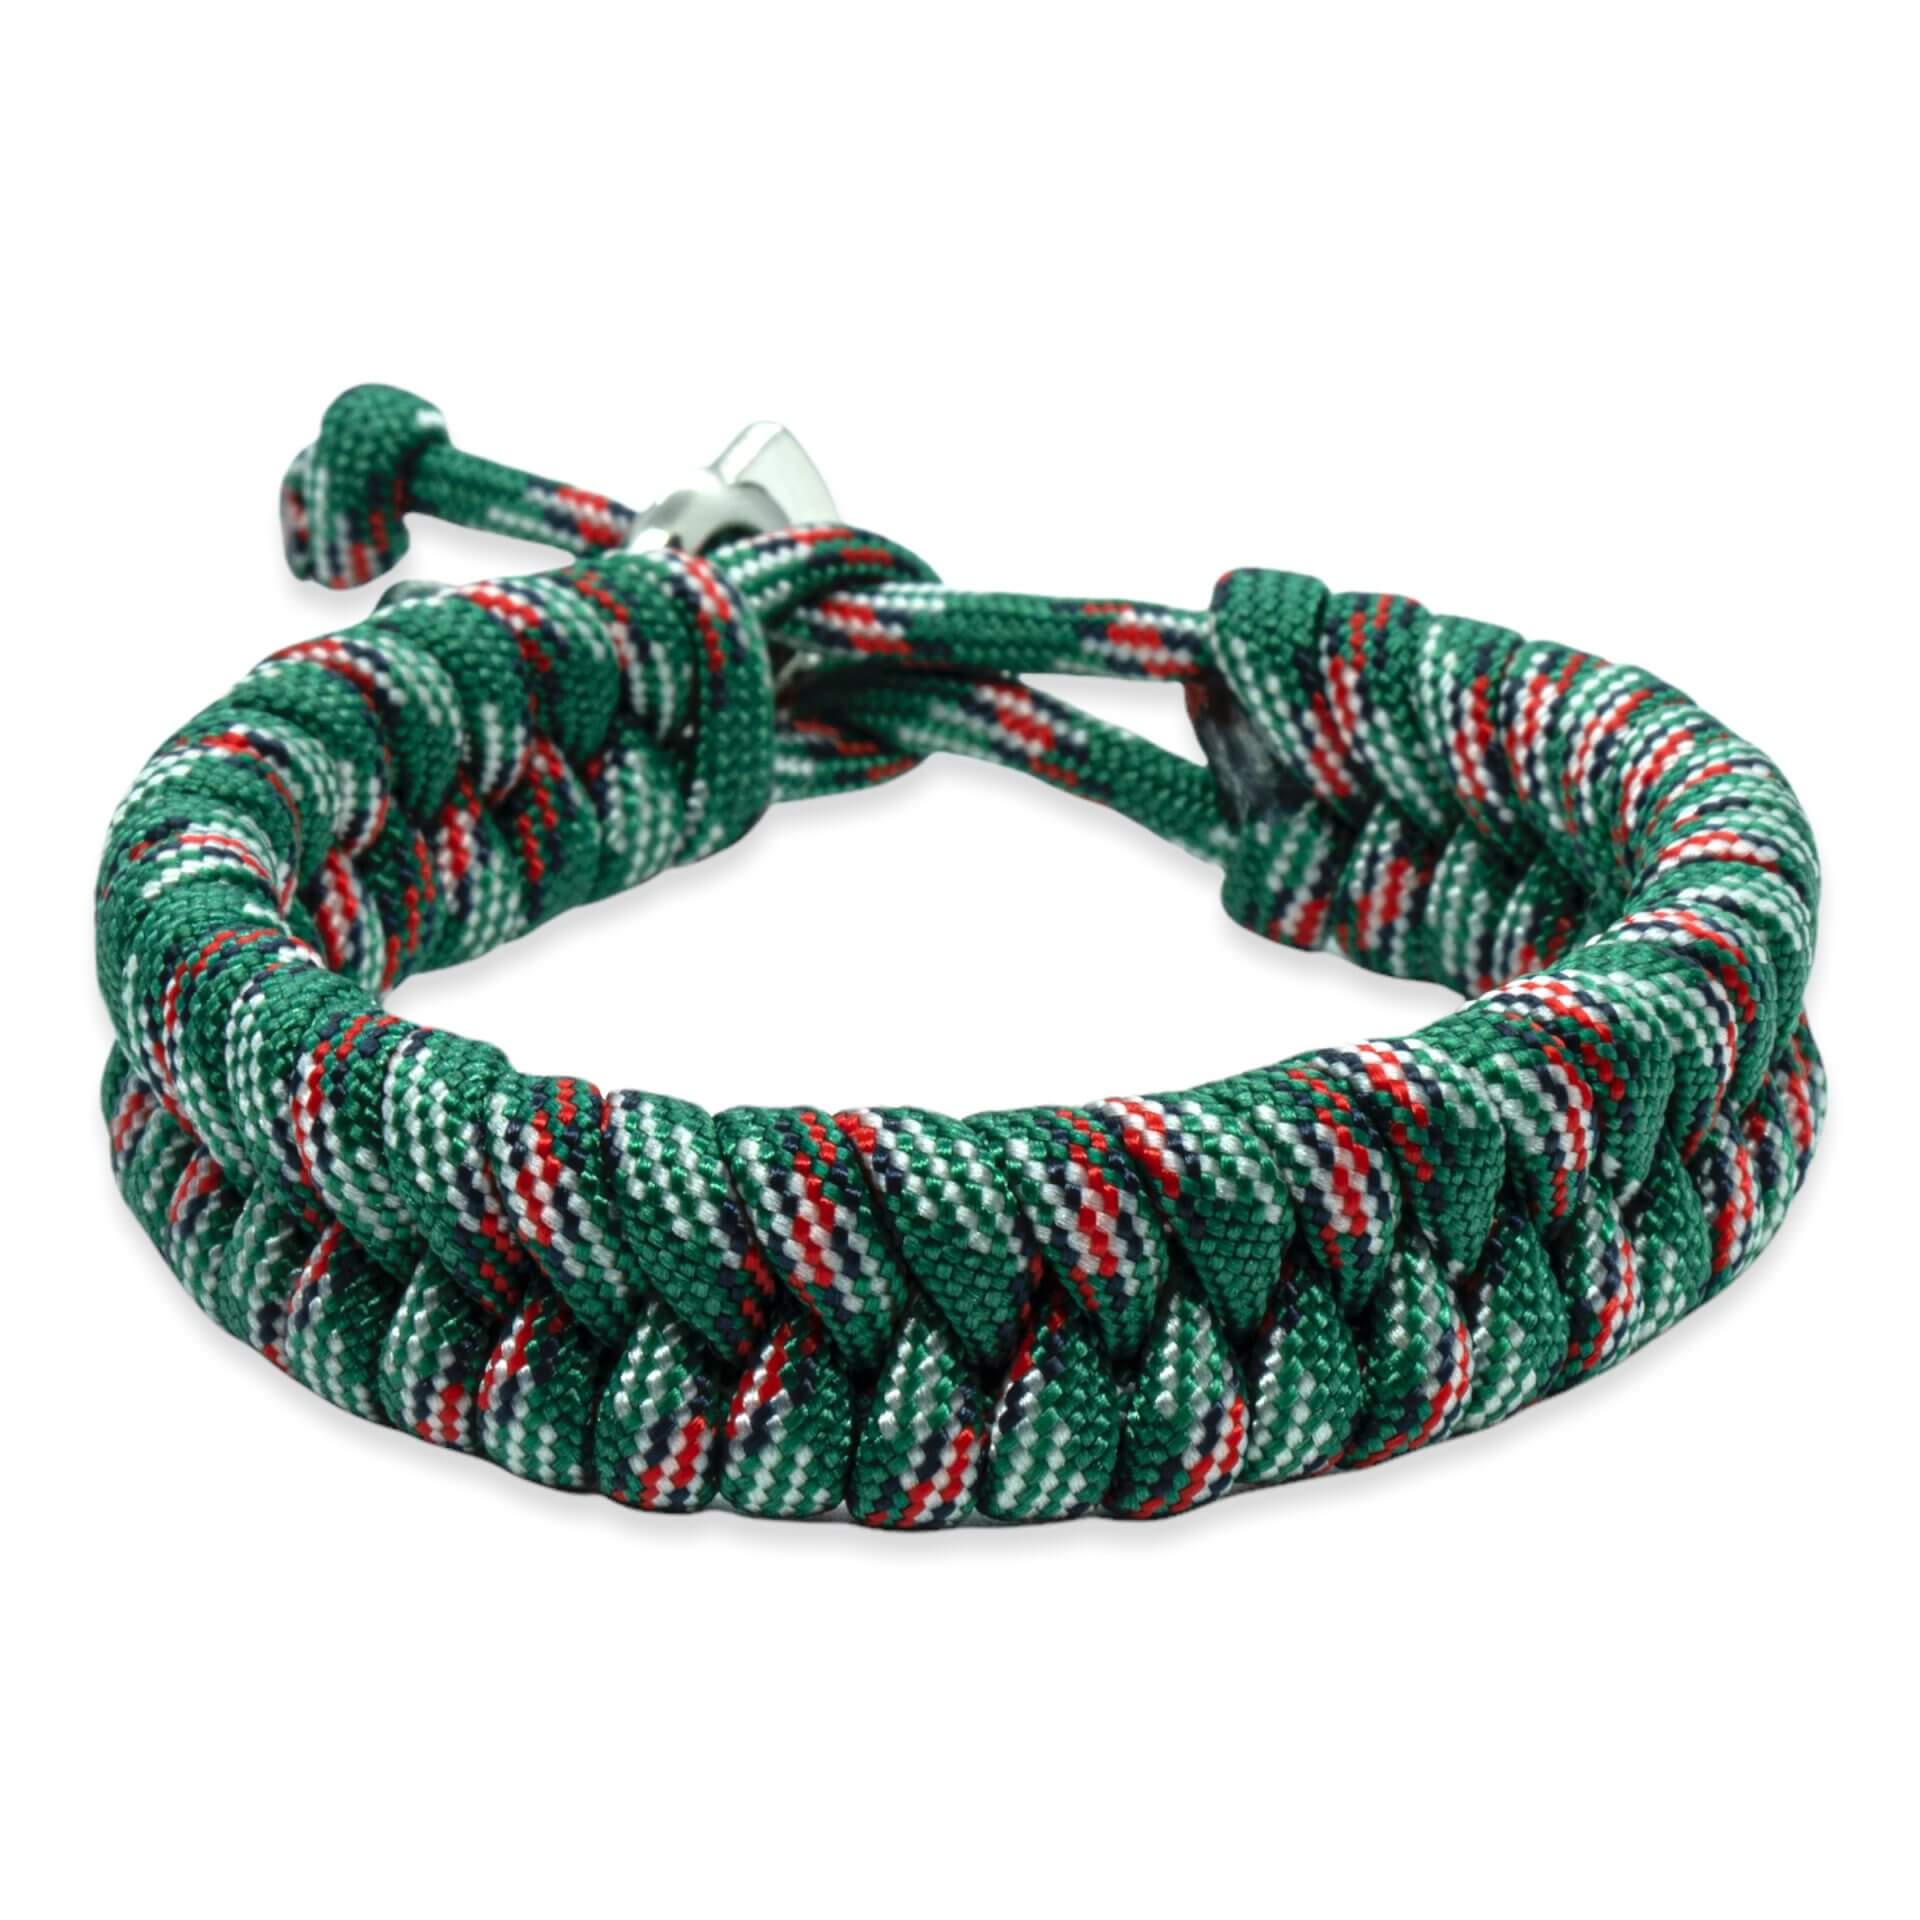 Zweedse staart armband - Groen zwart rood blauwe touw kleuren